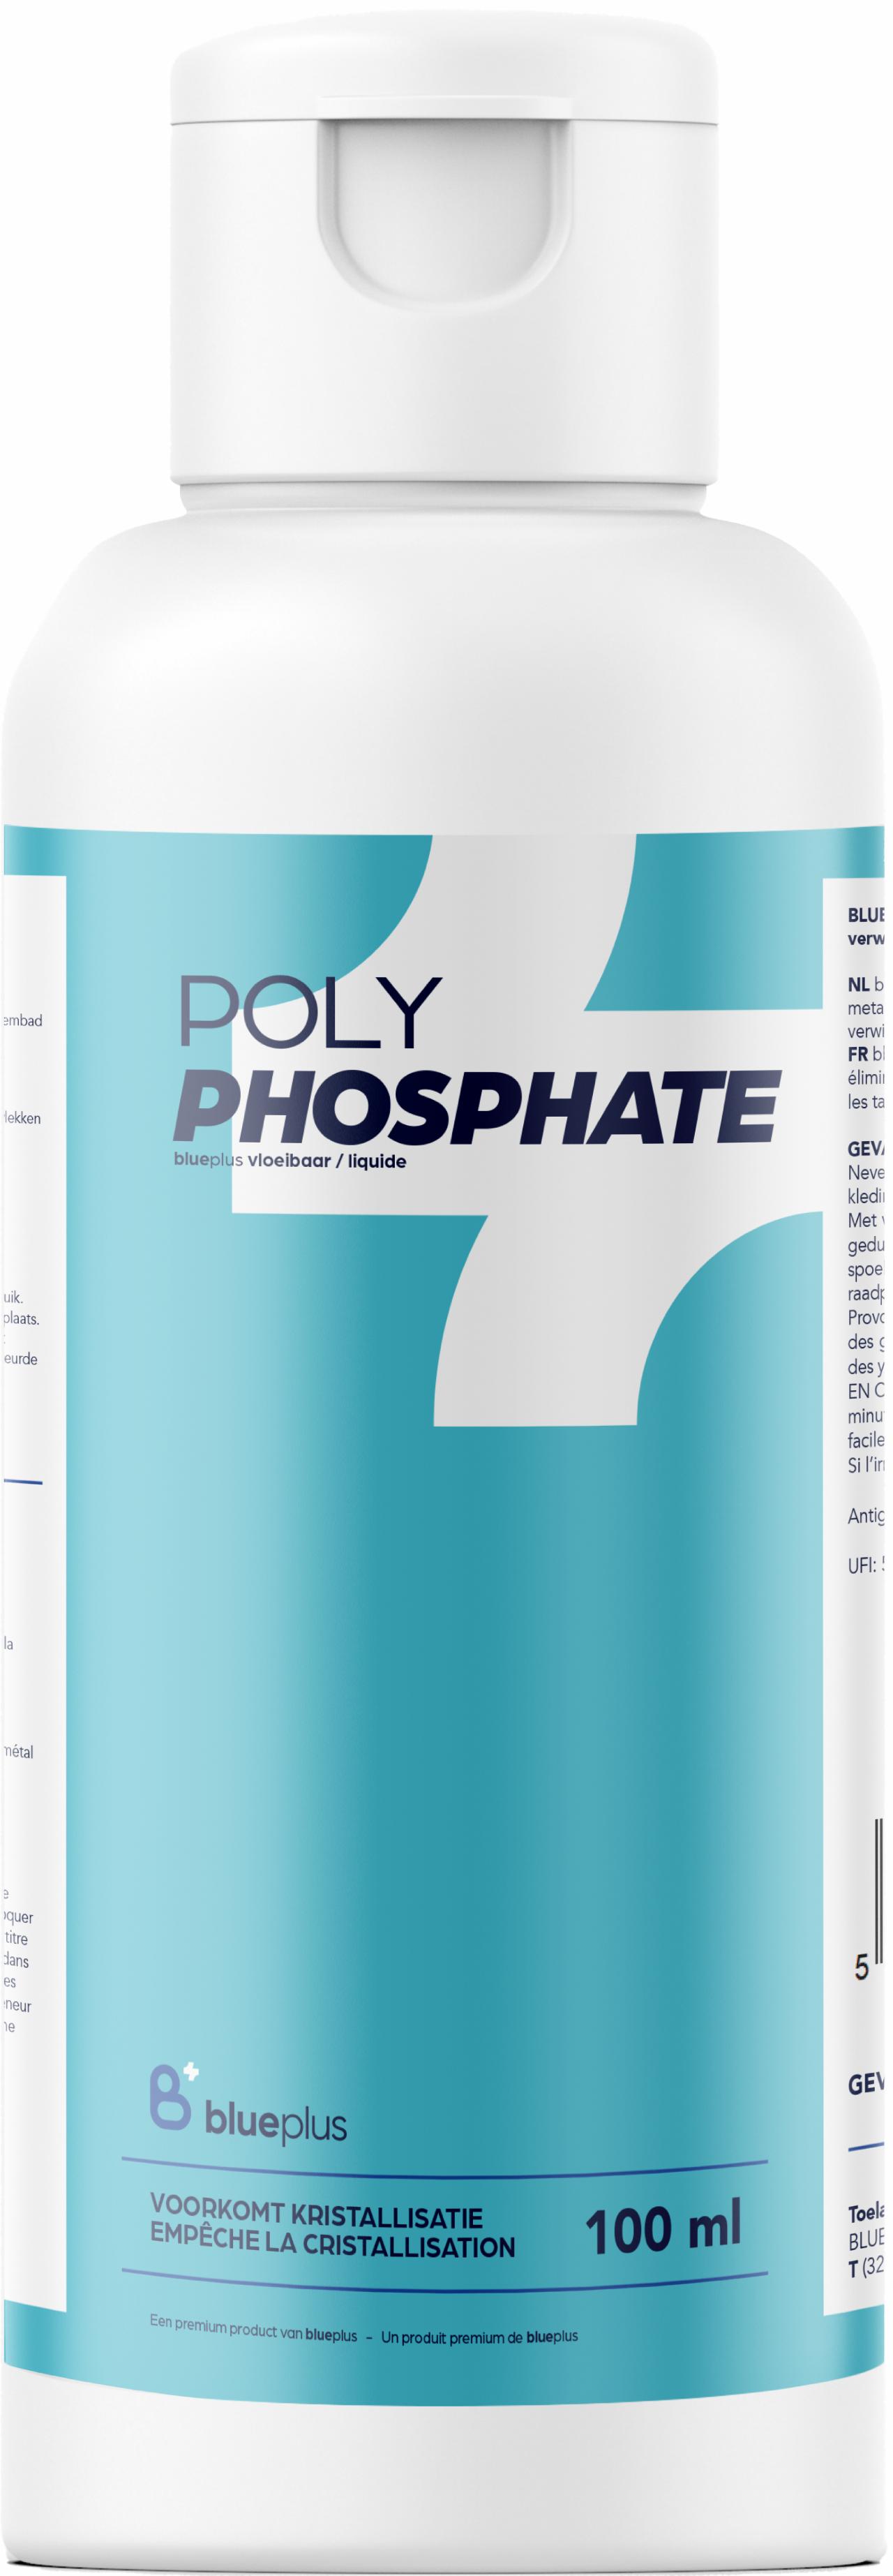 blueplus polyphosphate anti-crystalisation 250ml